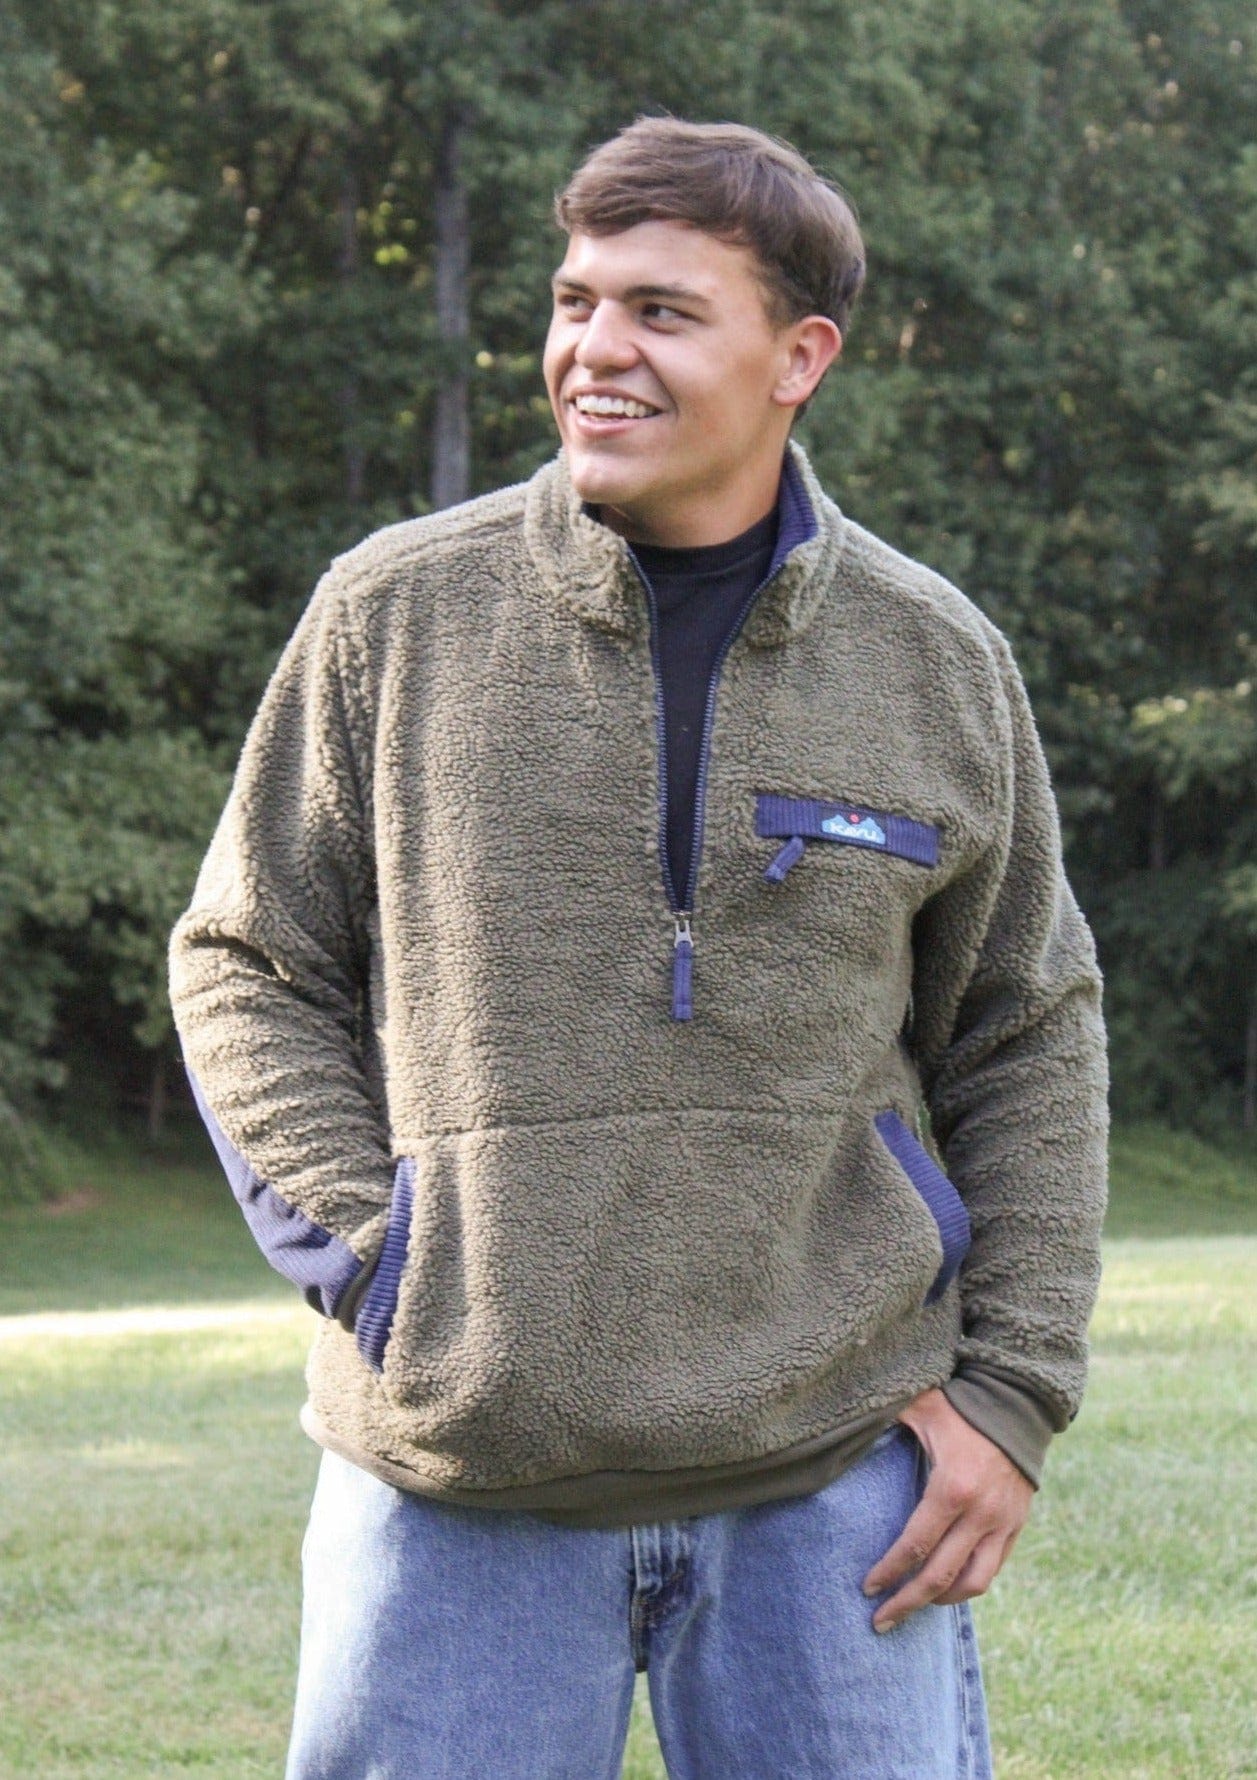 KAVU  Calawah Fleece Pullover for Men – Mattie B's Gifts & Apparel